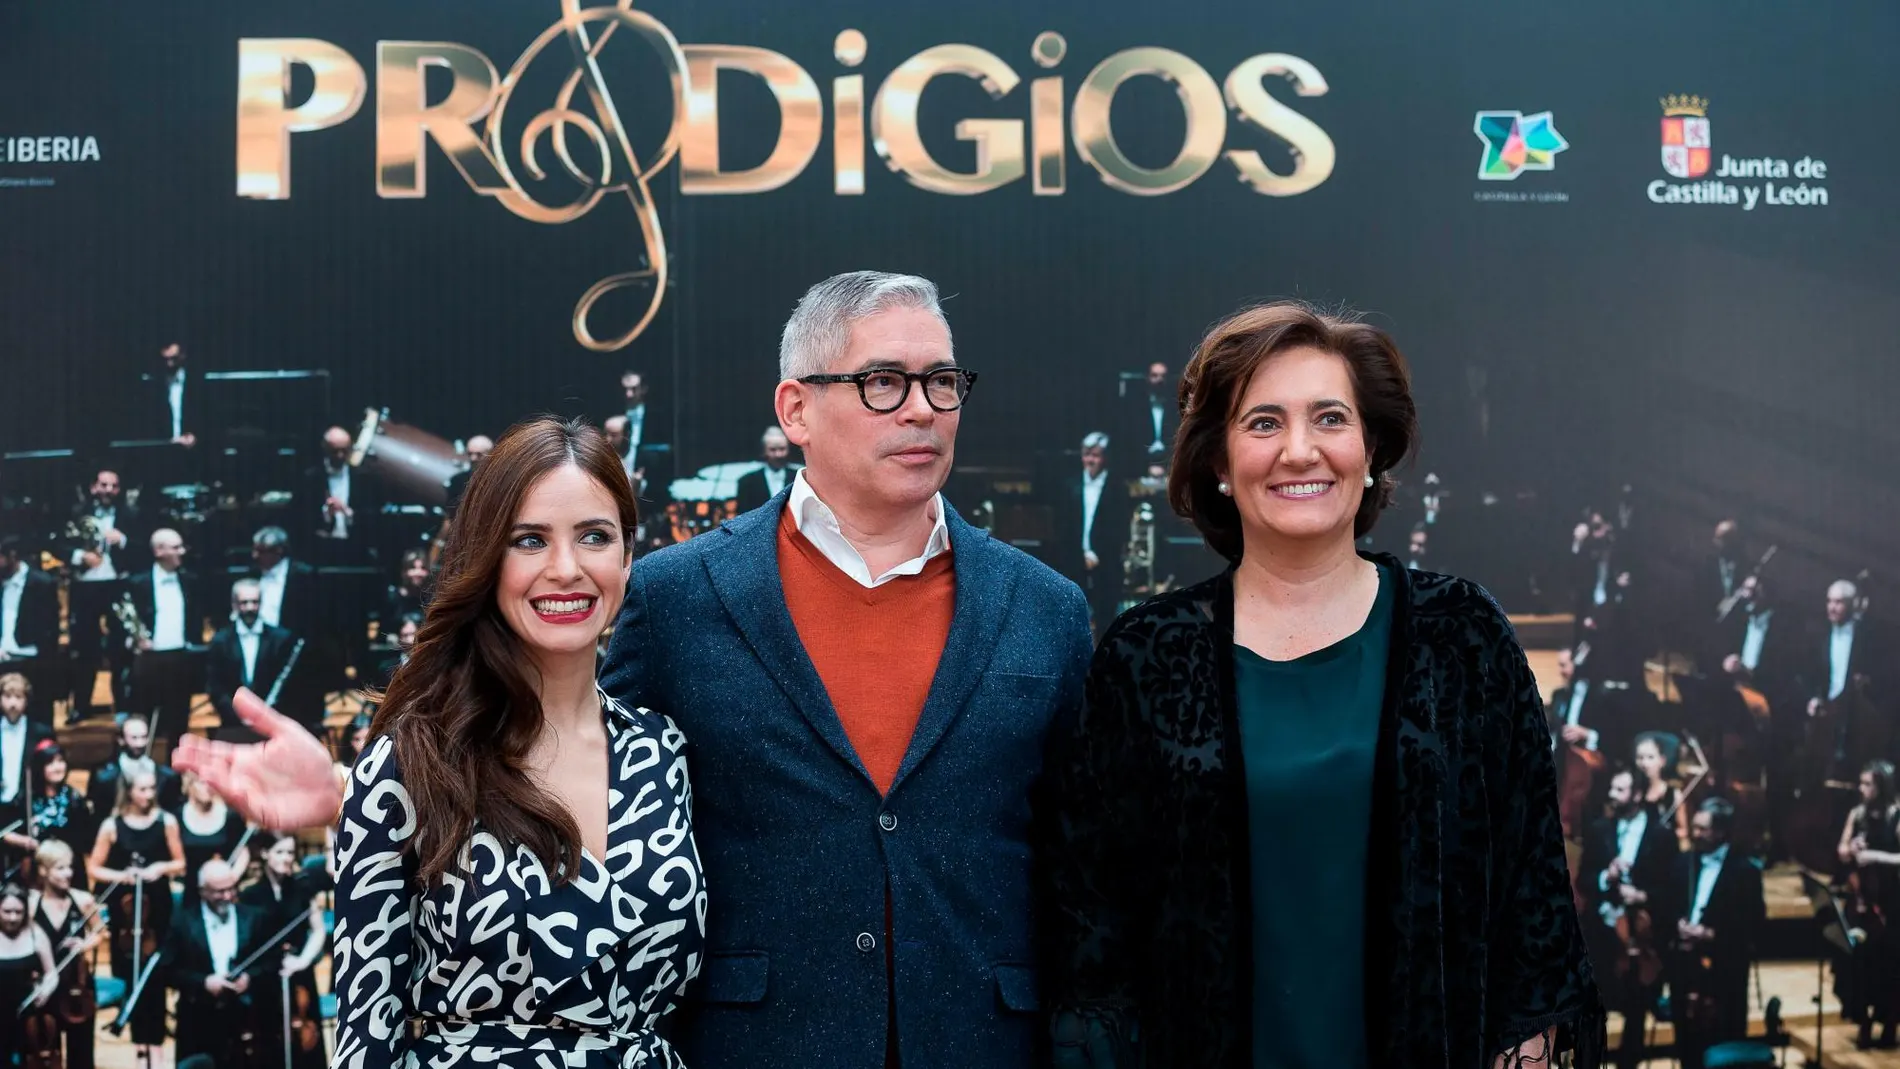 La consejera de Cultura y Turismo, María Josefa García Cirac, junto a los presentadores del nuevo programa de TVE, «Prodigios», Boris Izaguirre y Paula Prendes